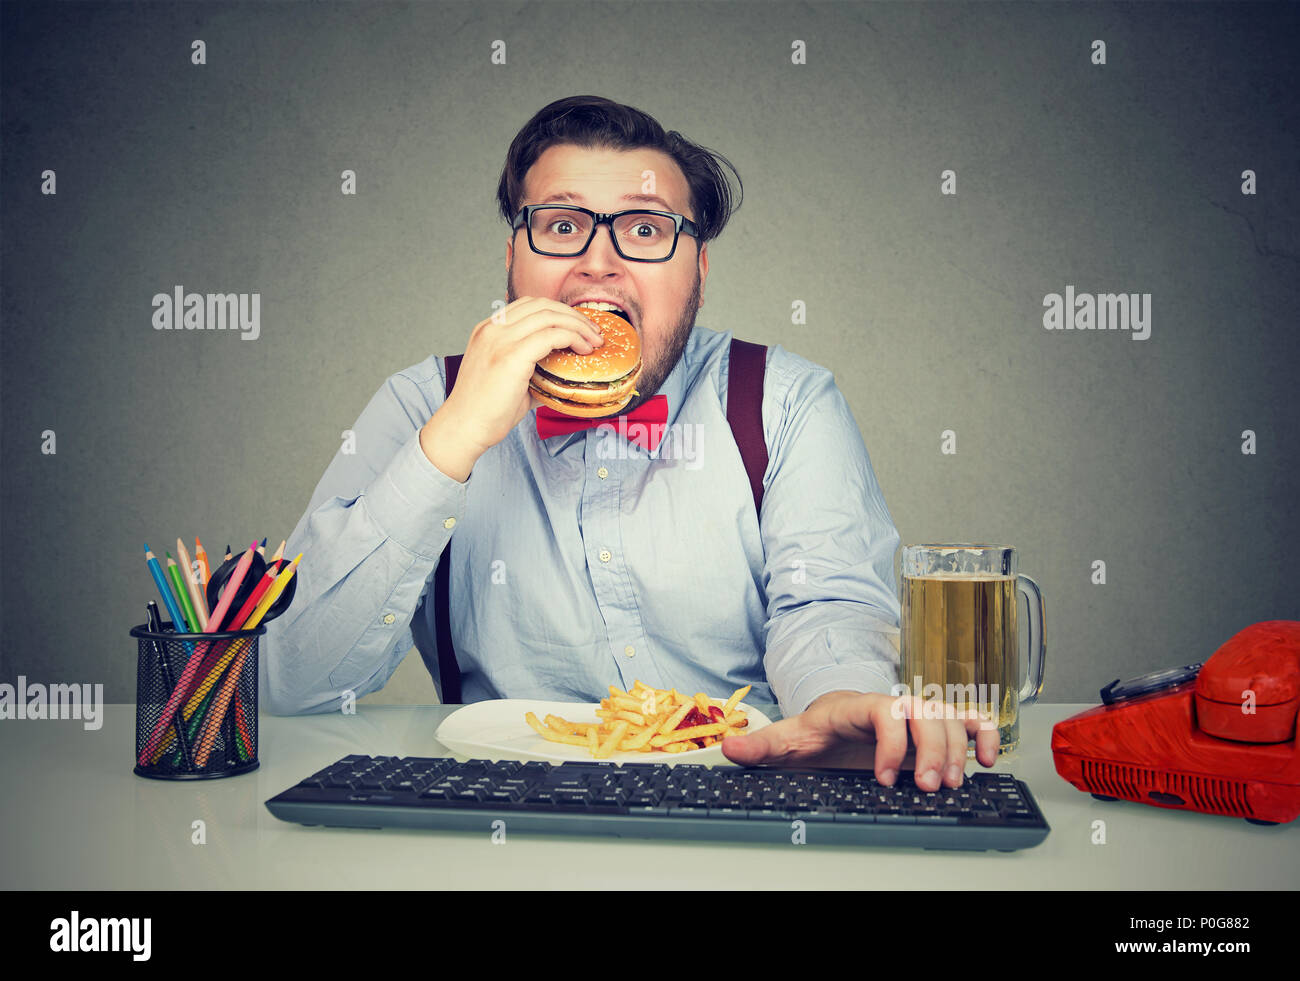 Übergewicht Geschäftsmann am Arbeitsplatz mit Computer und verbrauchen fast food Suchen super an † Kamera Hungrigen sitzen Stockfoto